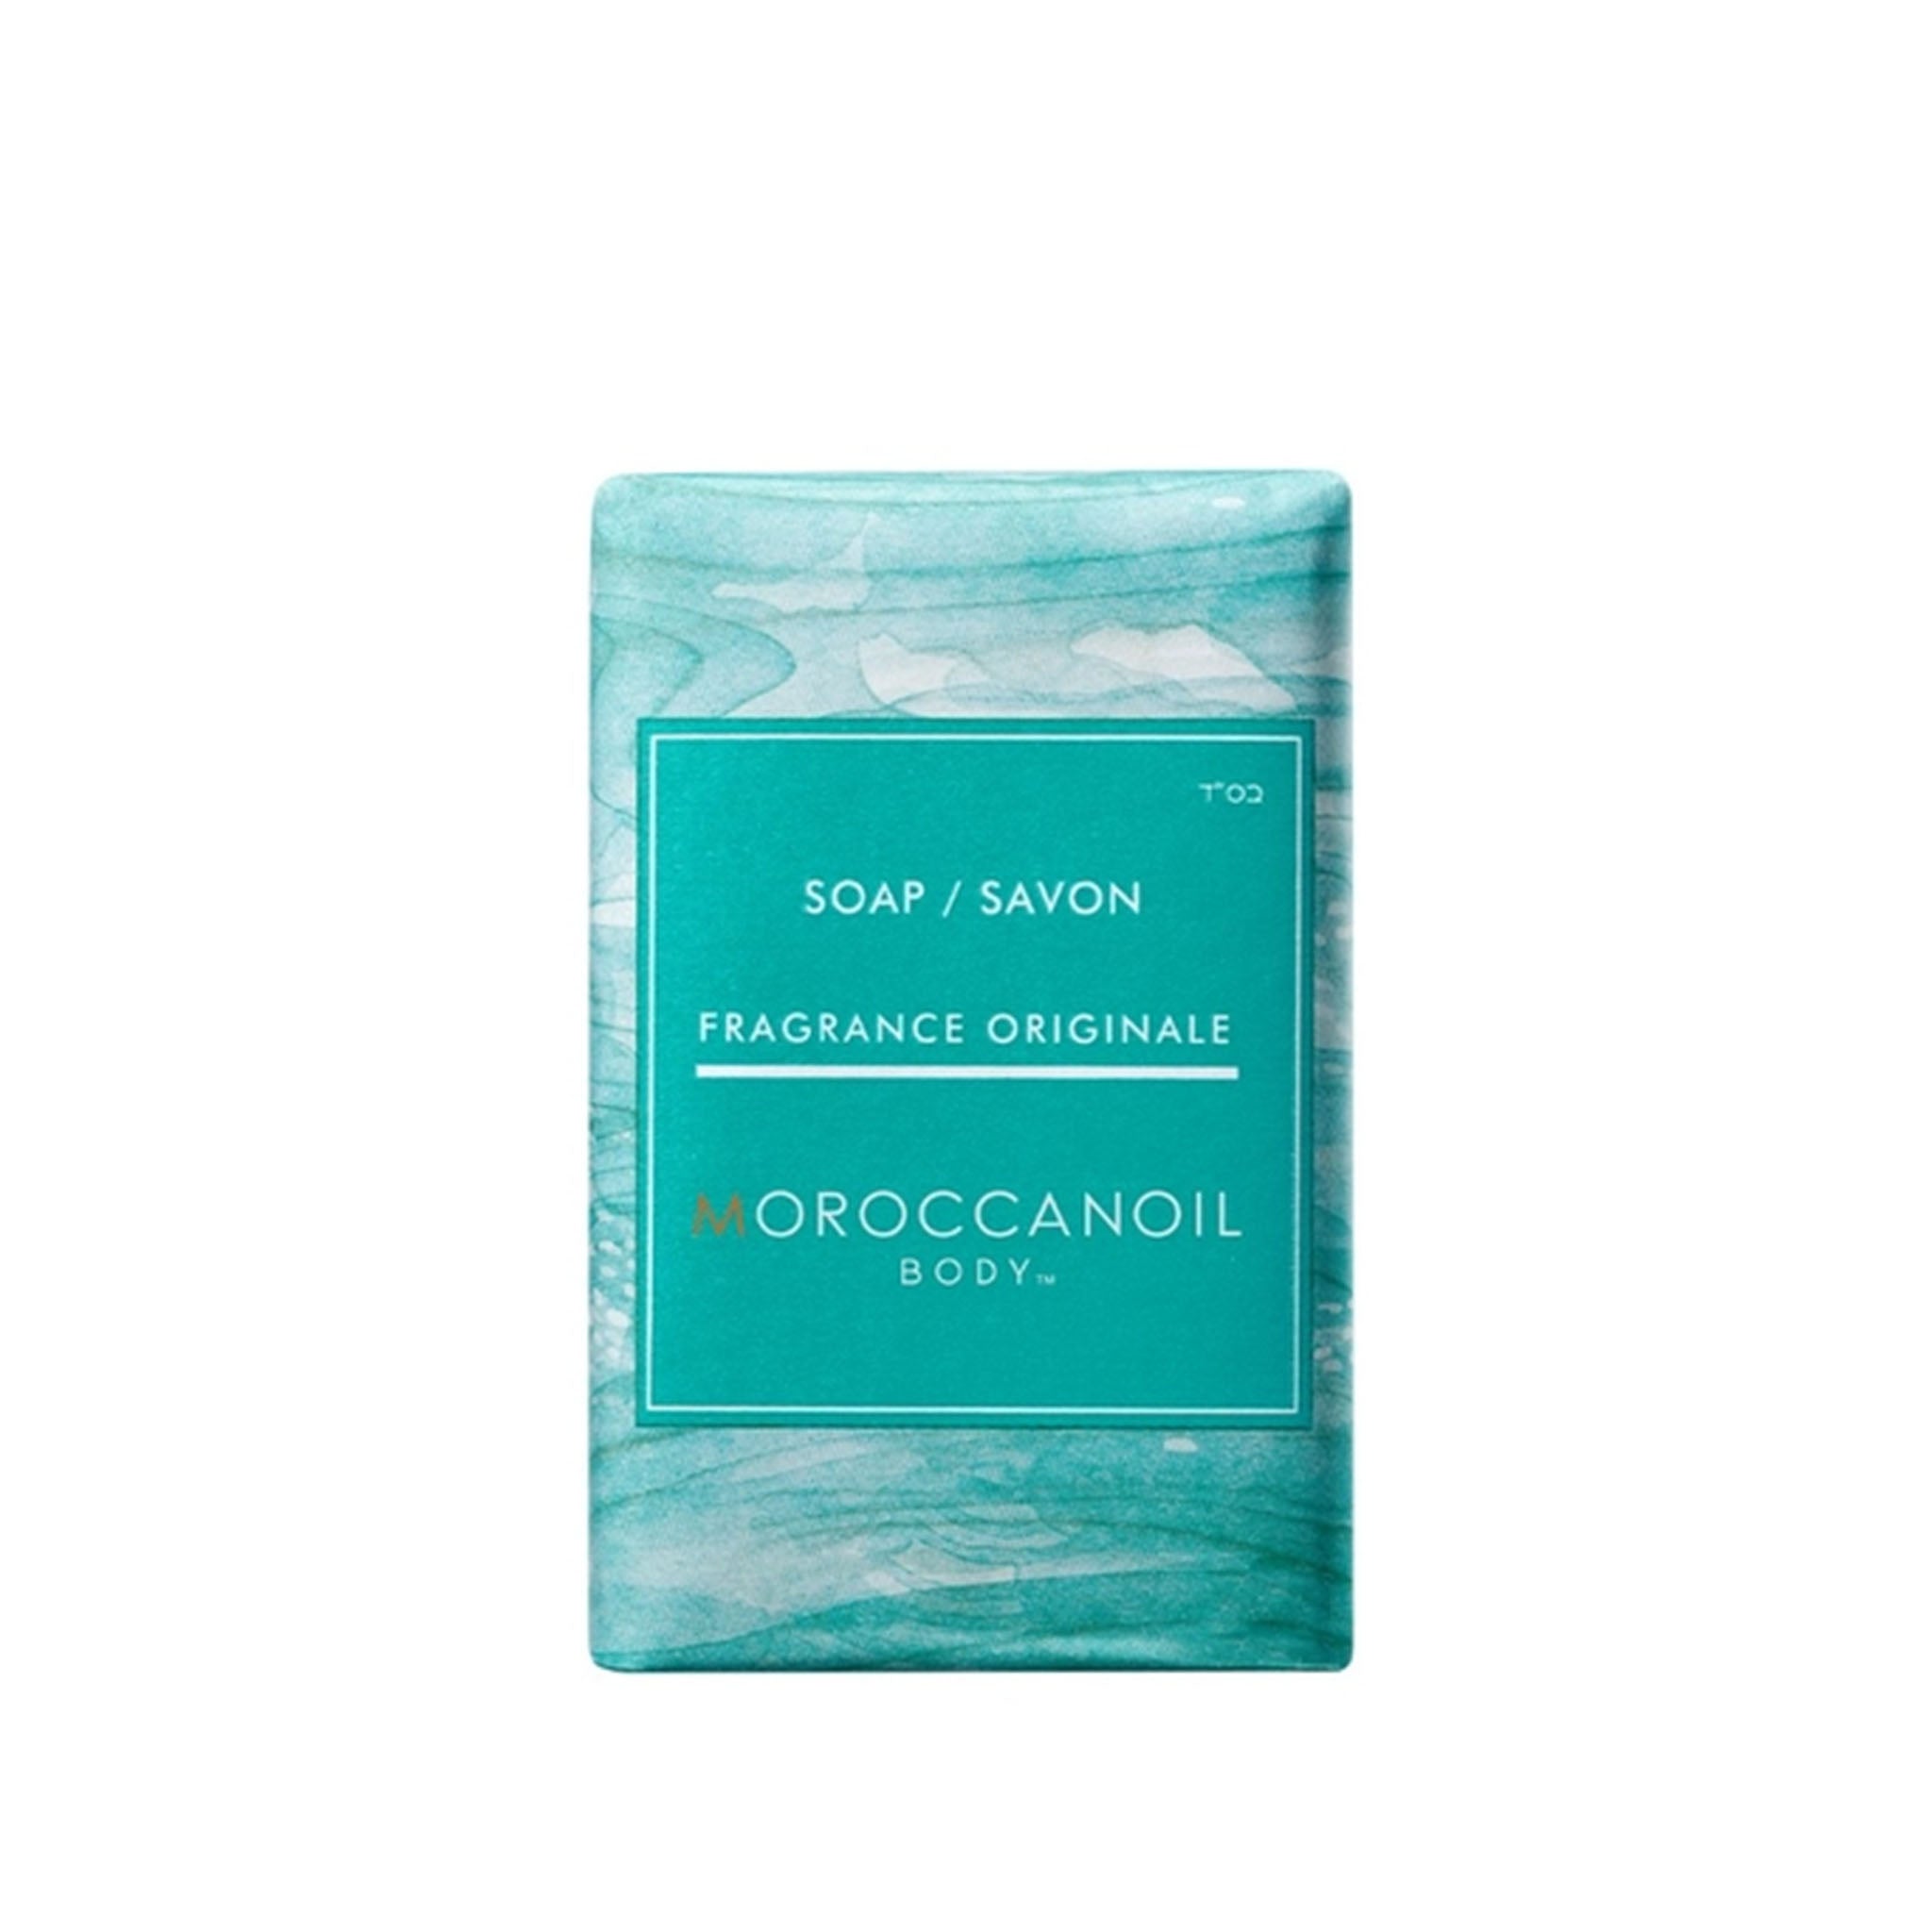 Moroccanoil. Barre de Savon Fragrance Originale - 200 g - Concept C. Shop